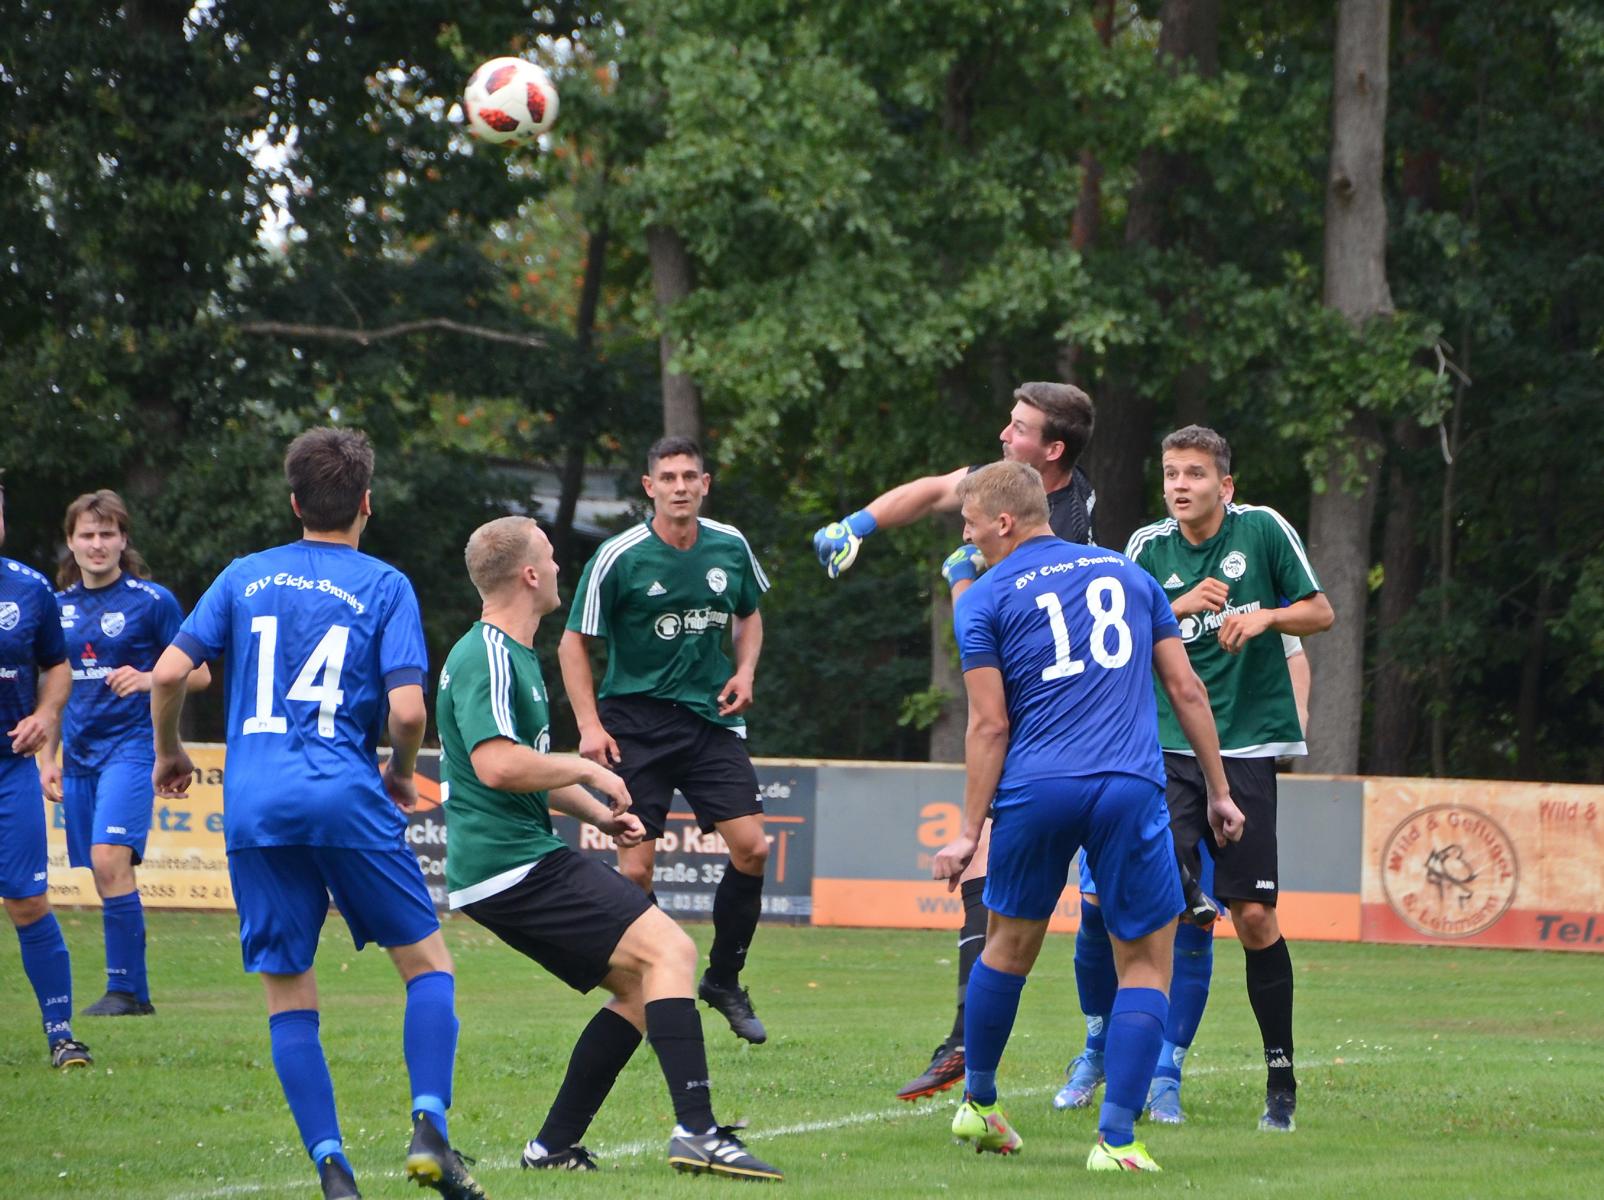 Spielbericht: 1. Pokalrunde 22/23 : Kahrener SV - Eiche Branitz 0:3 (0:1), 14.08.2022